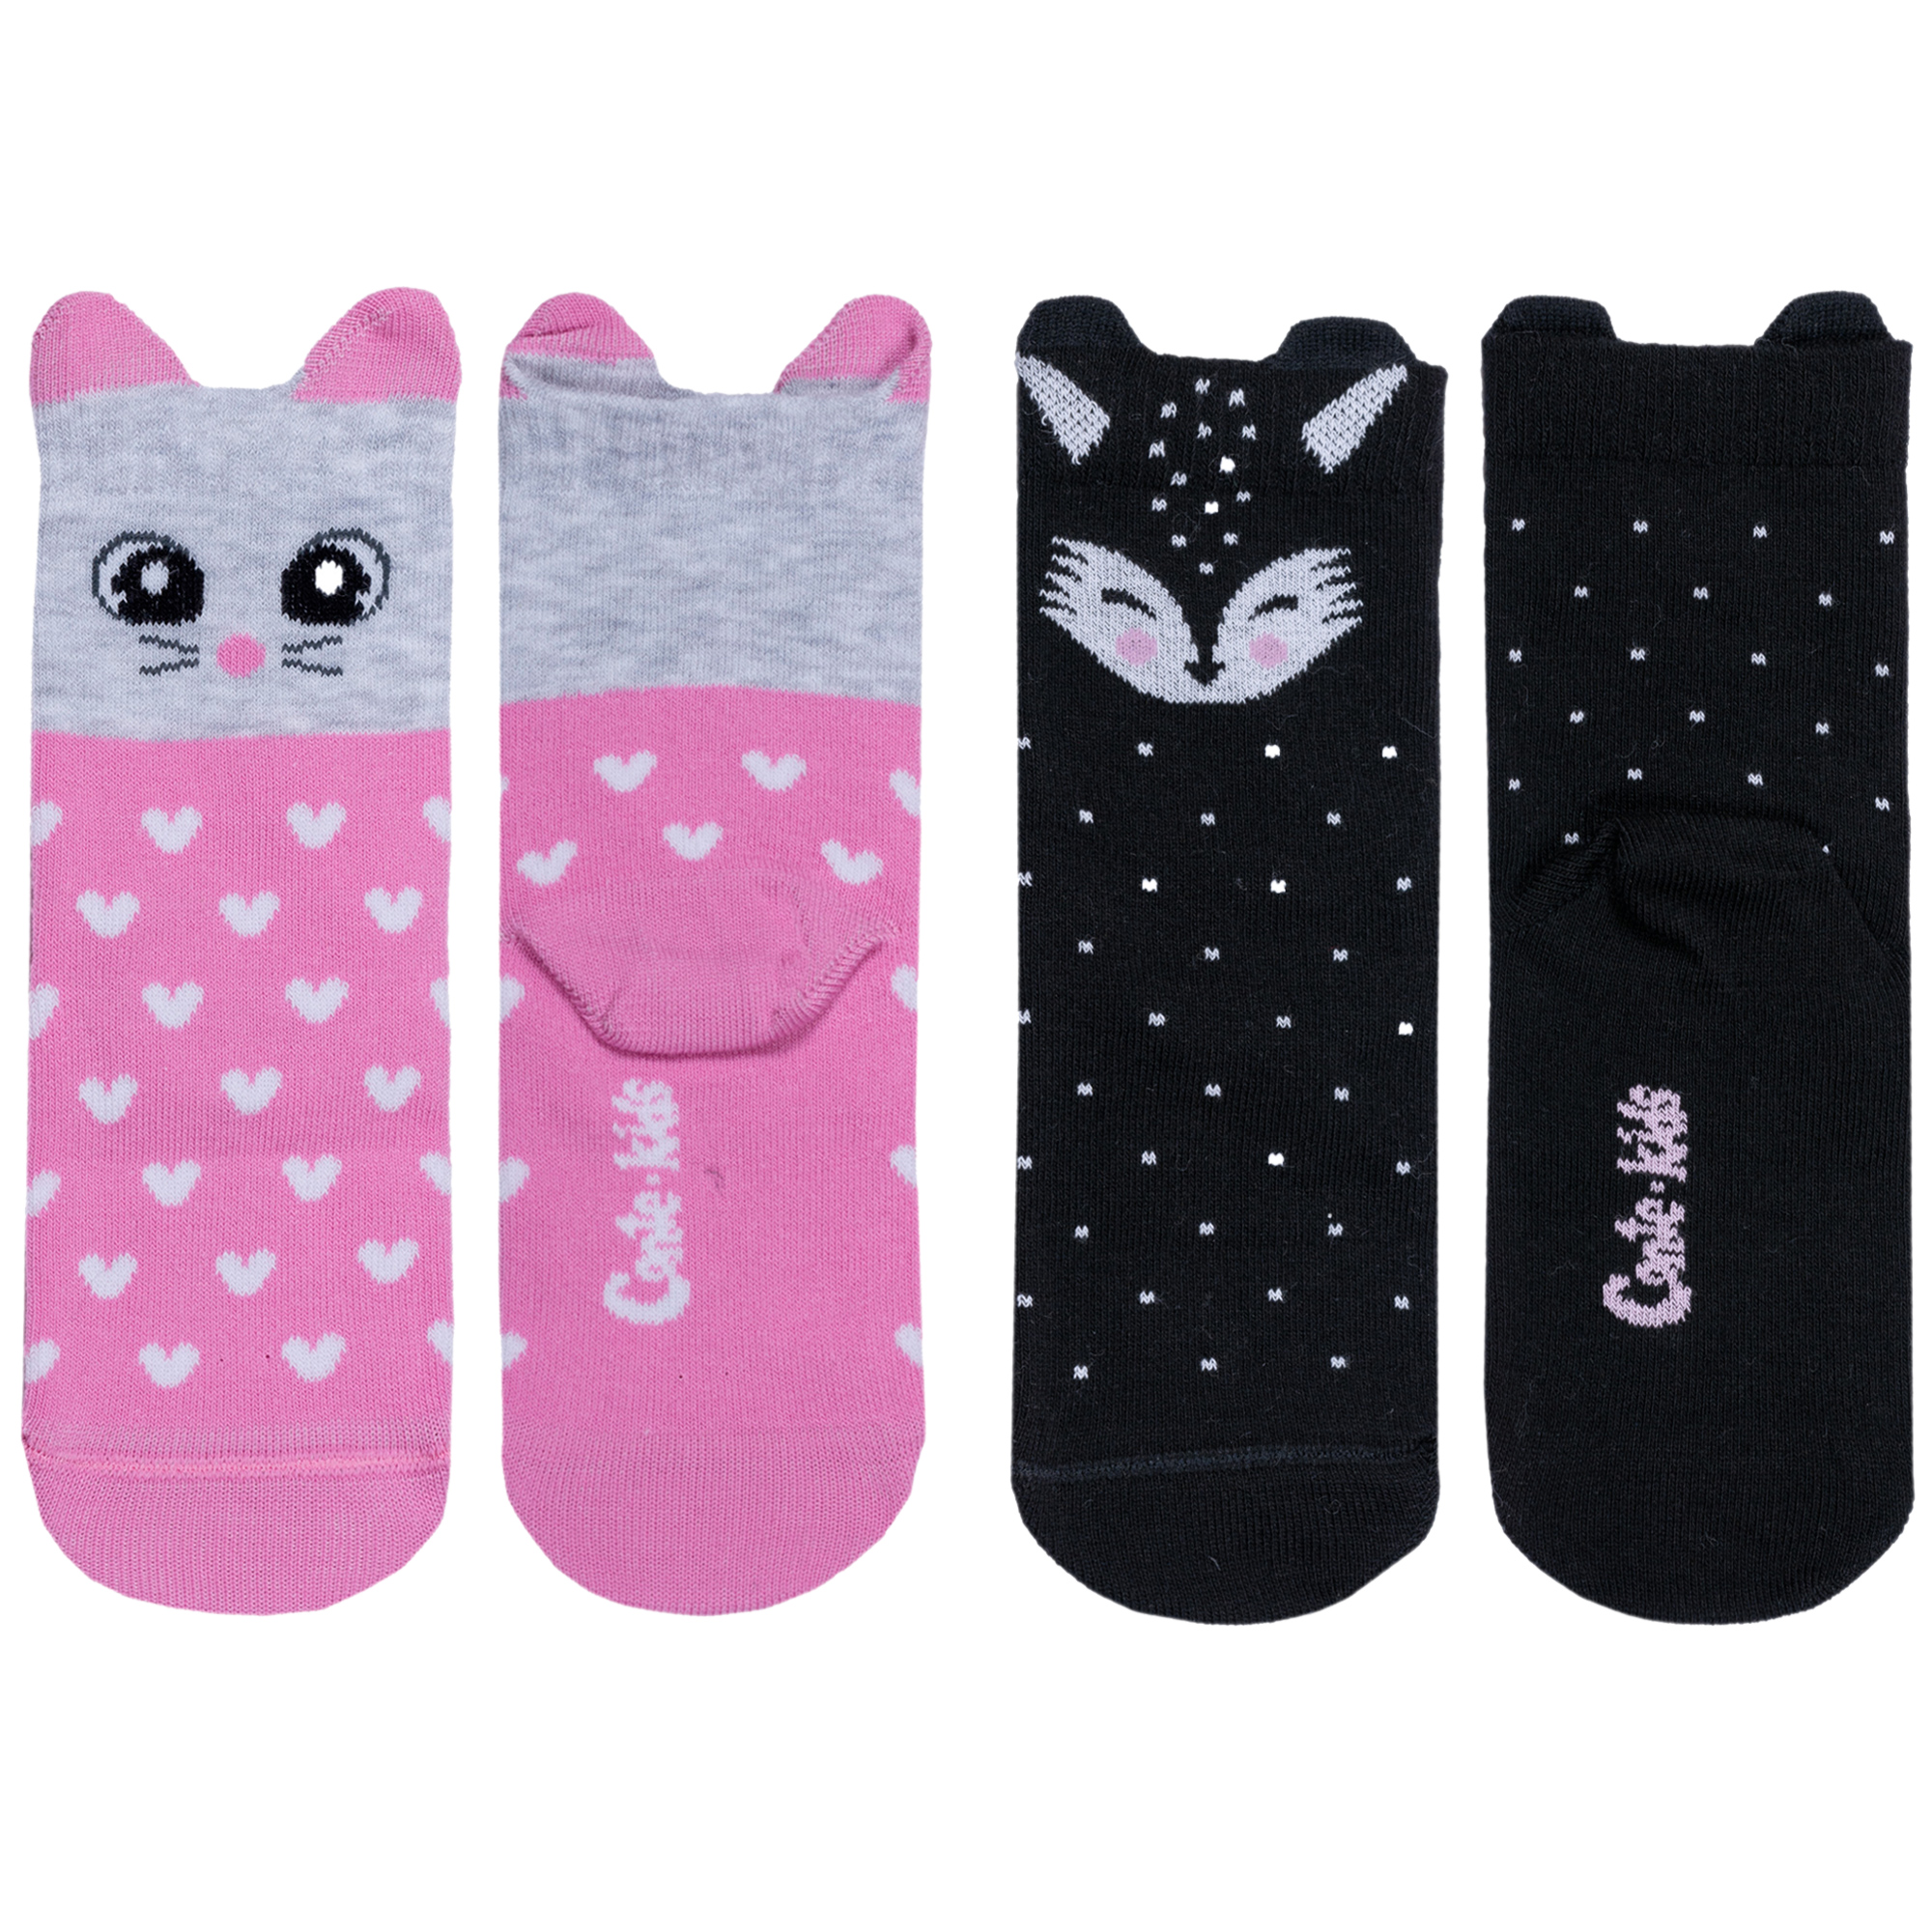 Носки для девочек Conte 2-17С-59СП цв. серый; розовый; черный; белый р. 18-20